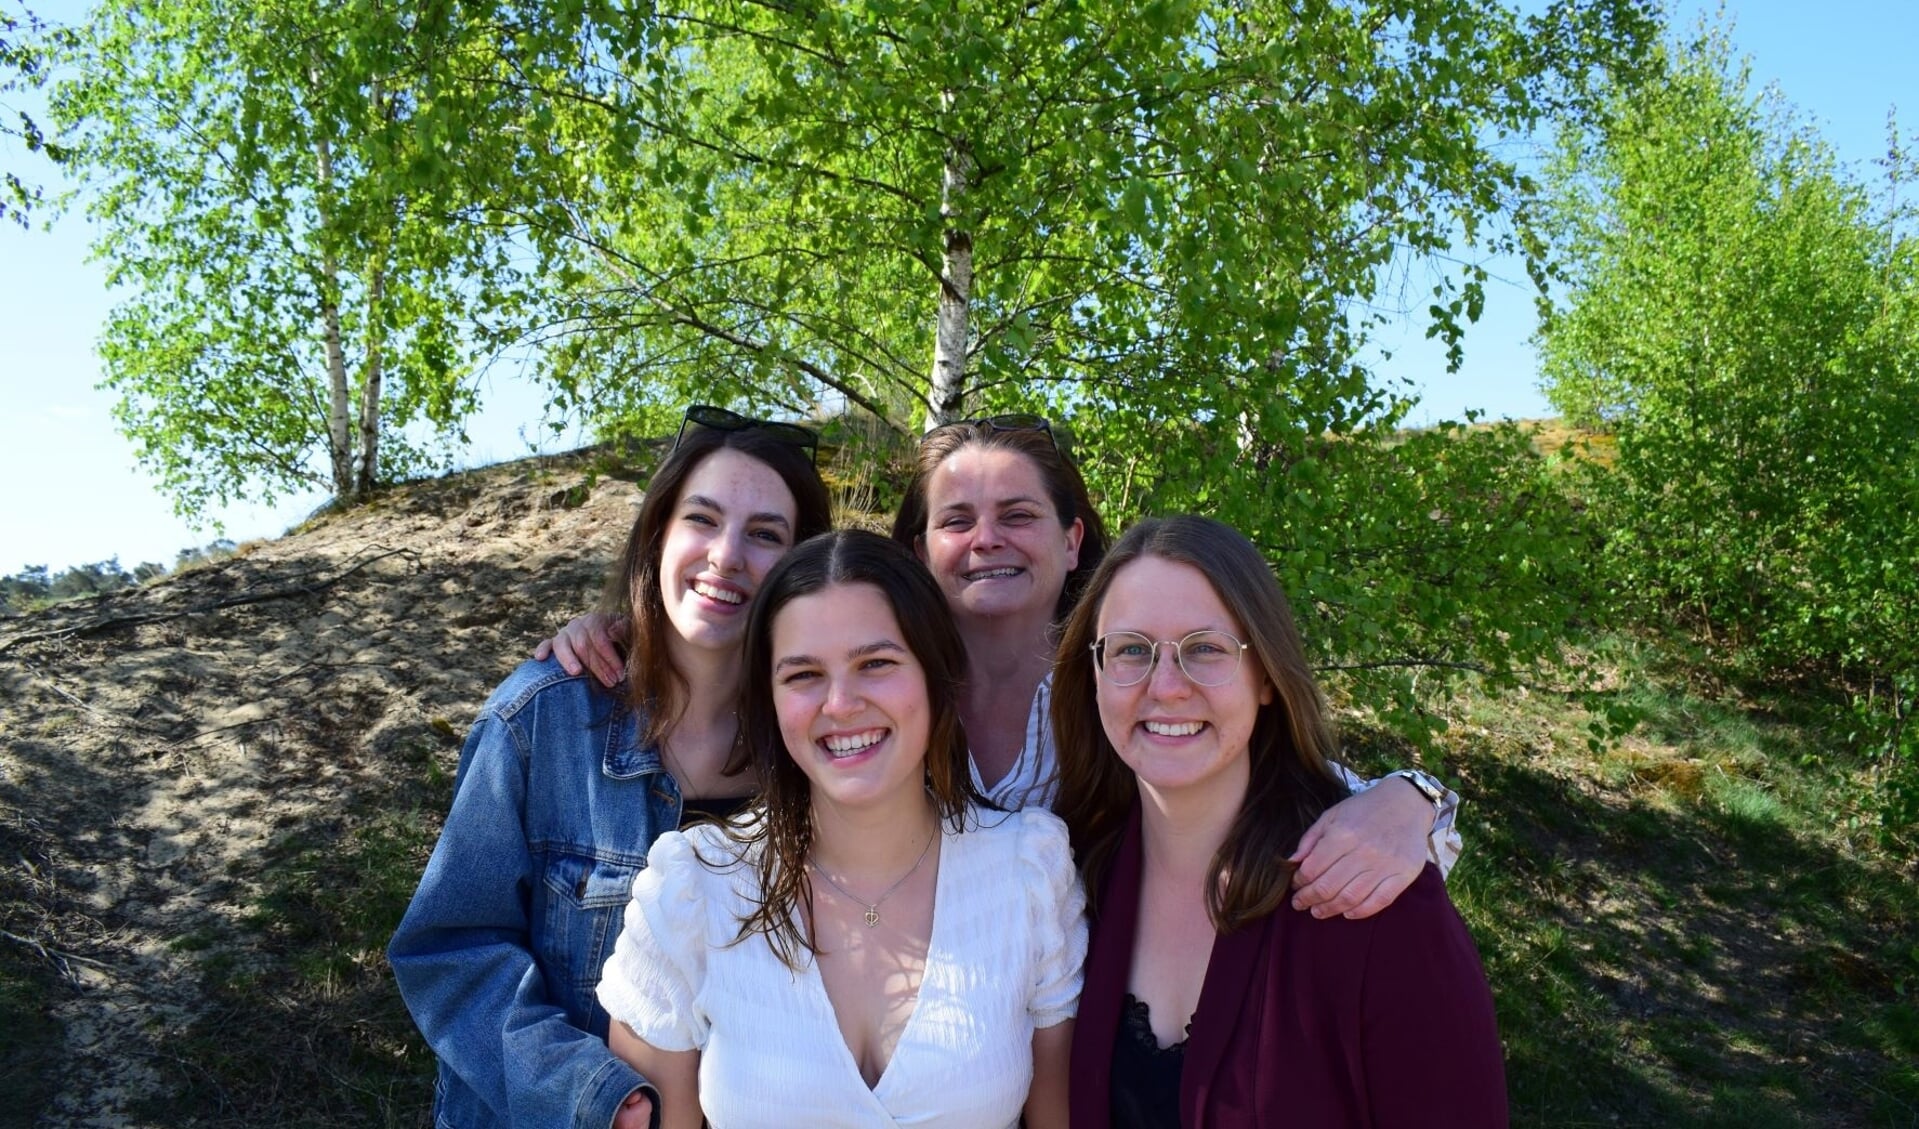 De zusjes Judith (16), Sophie (20), Esther (26) en tante Hanneke (41) komen in de benen voor genen.